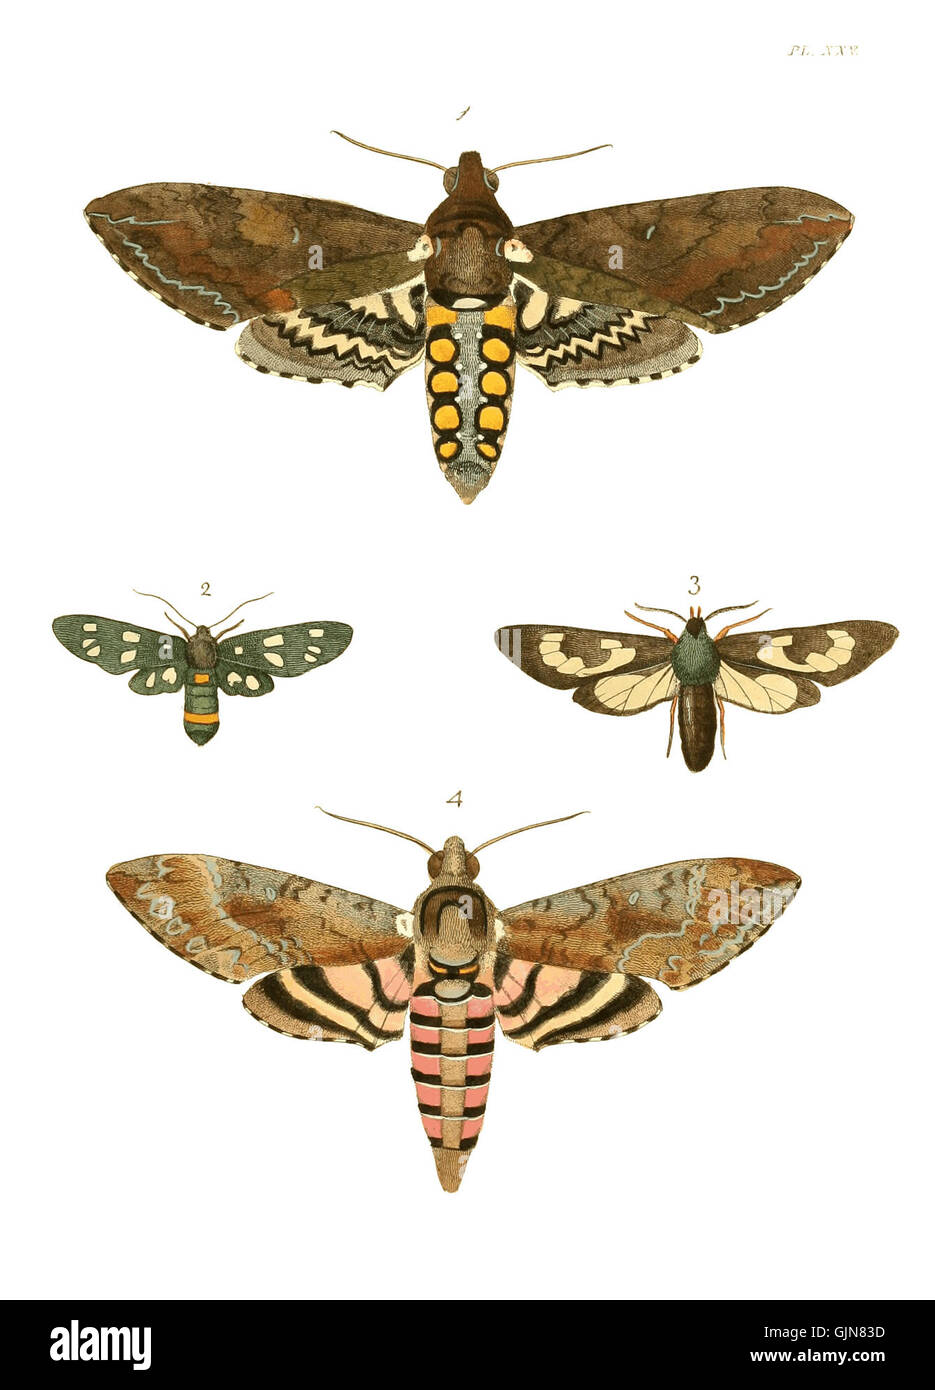 Illustrations of Exotic Entomology I 25 Stock Photo